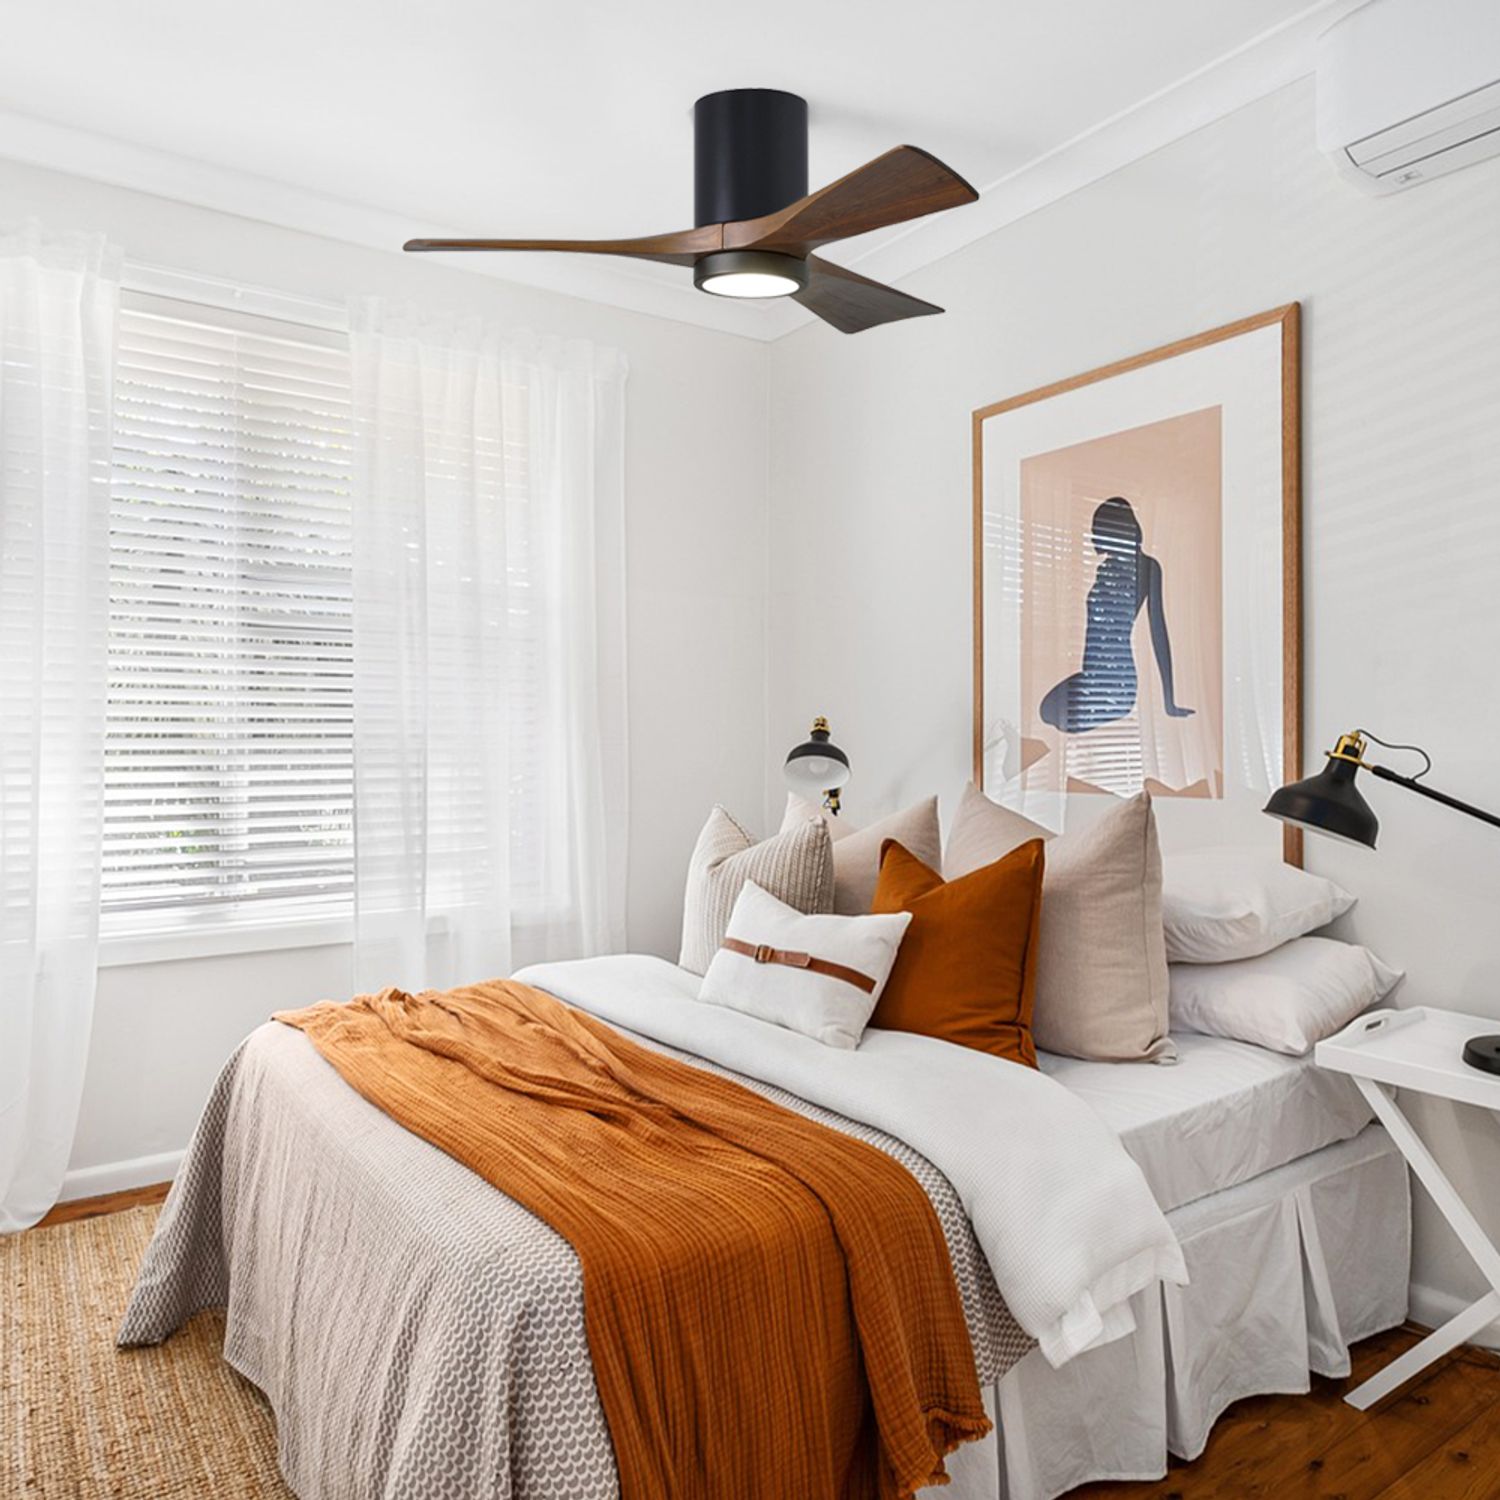 52 indoor ceiling fan in a bedroom